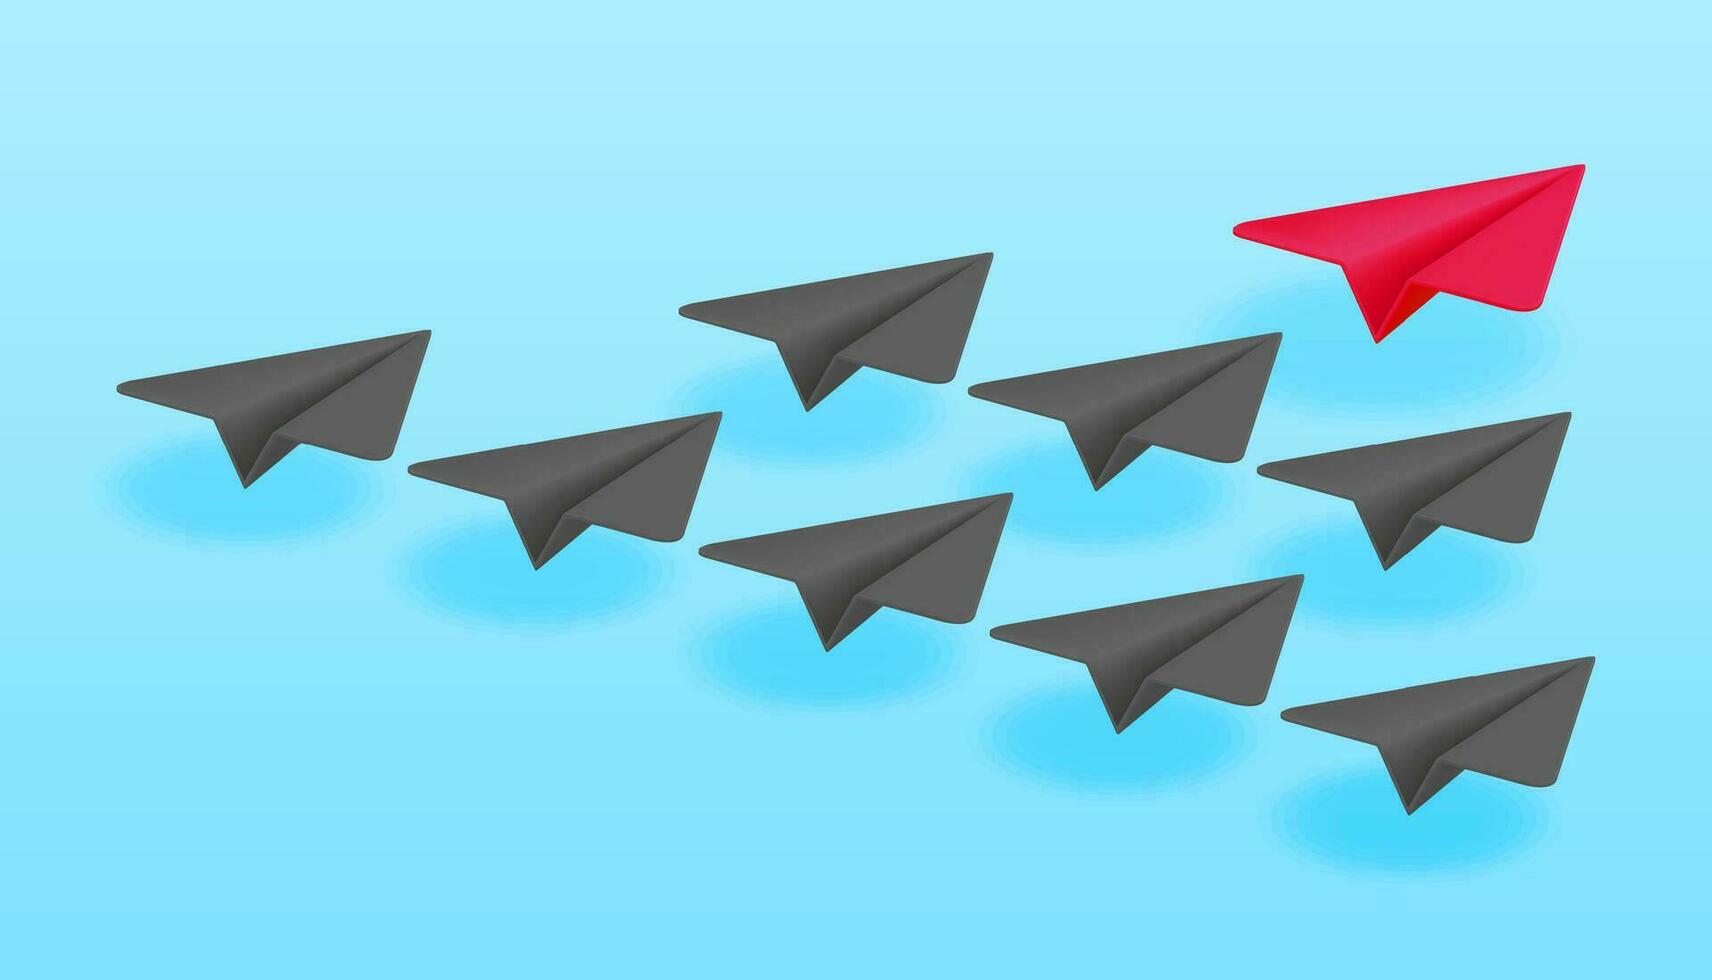 3d rood papier vlak in menigte van grijs vliegtuigen geïsoleerd. geven vliegtuig leiderschap en succes. diversiteit, uniekheid en individualiteit. concept van verschil, motivatie en groei. vector illustratie